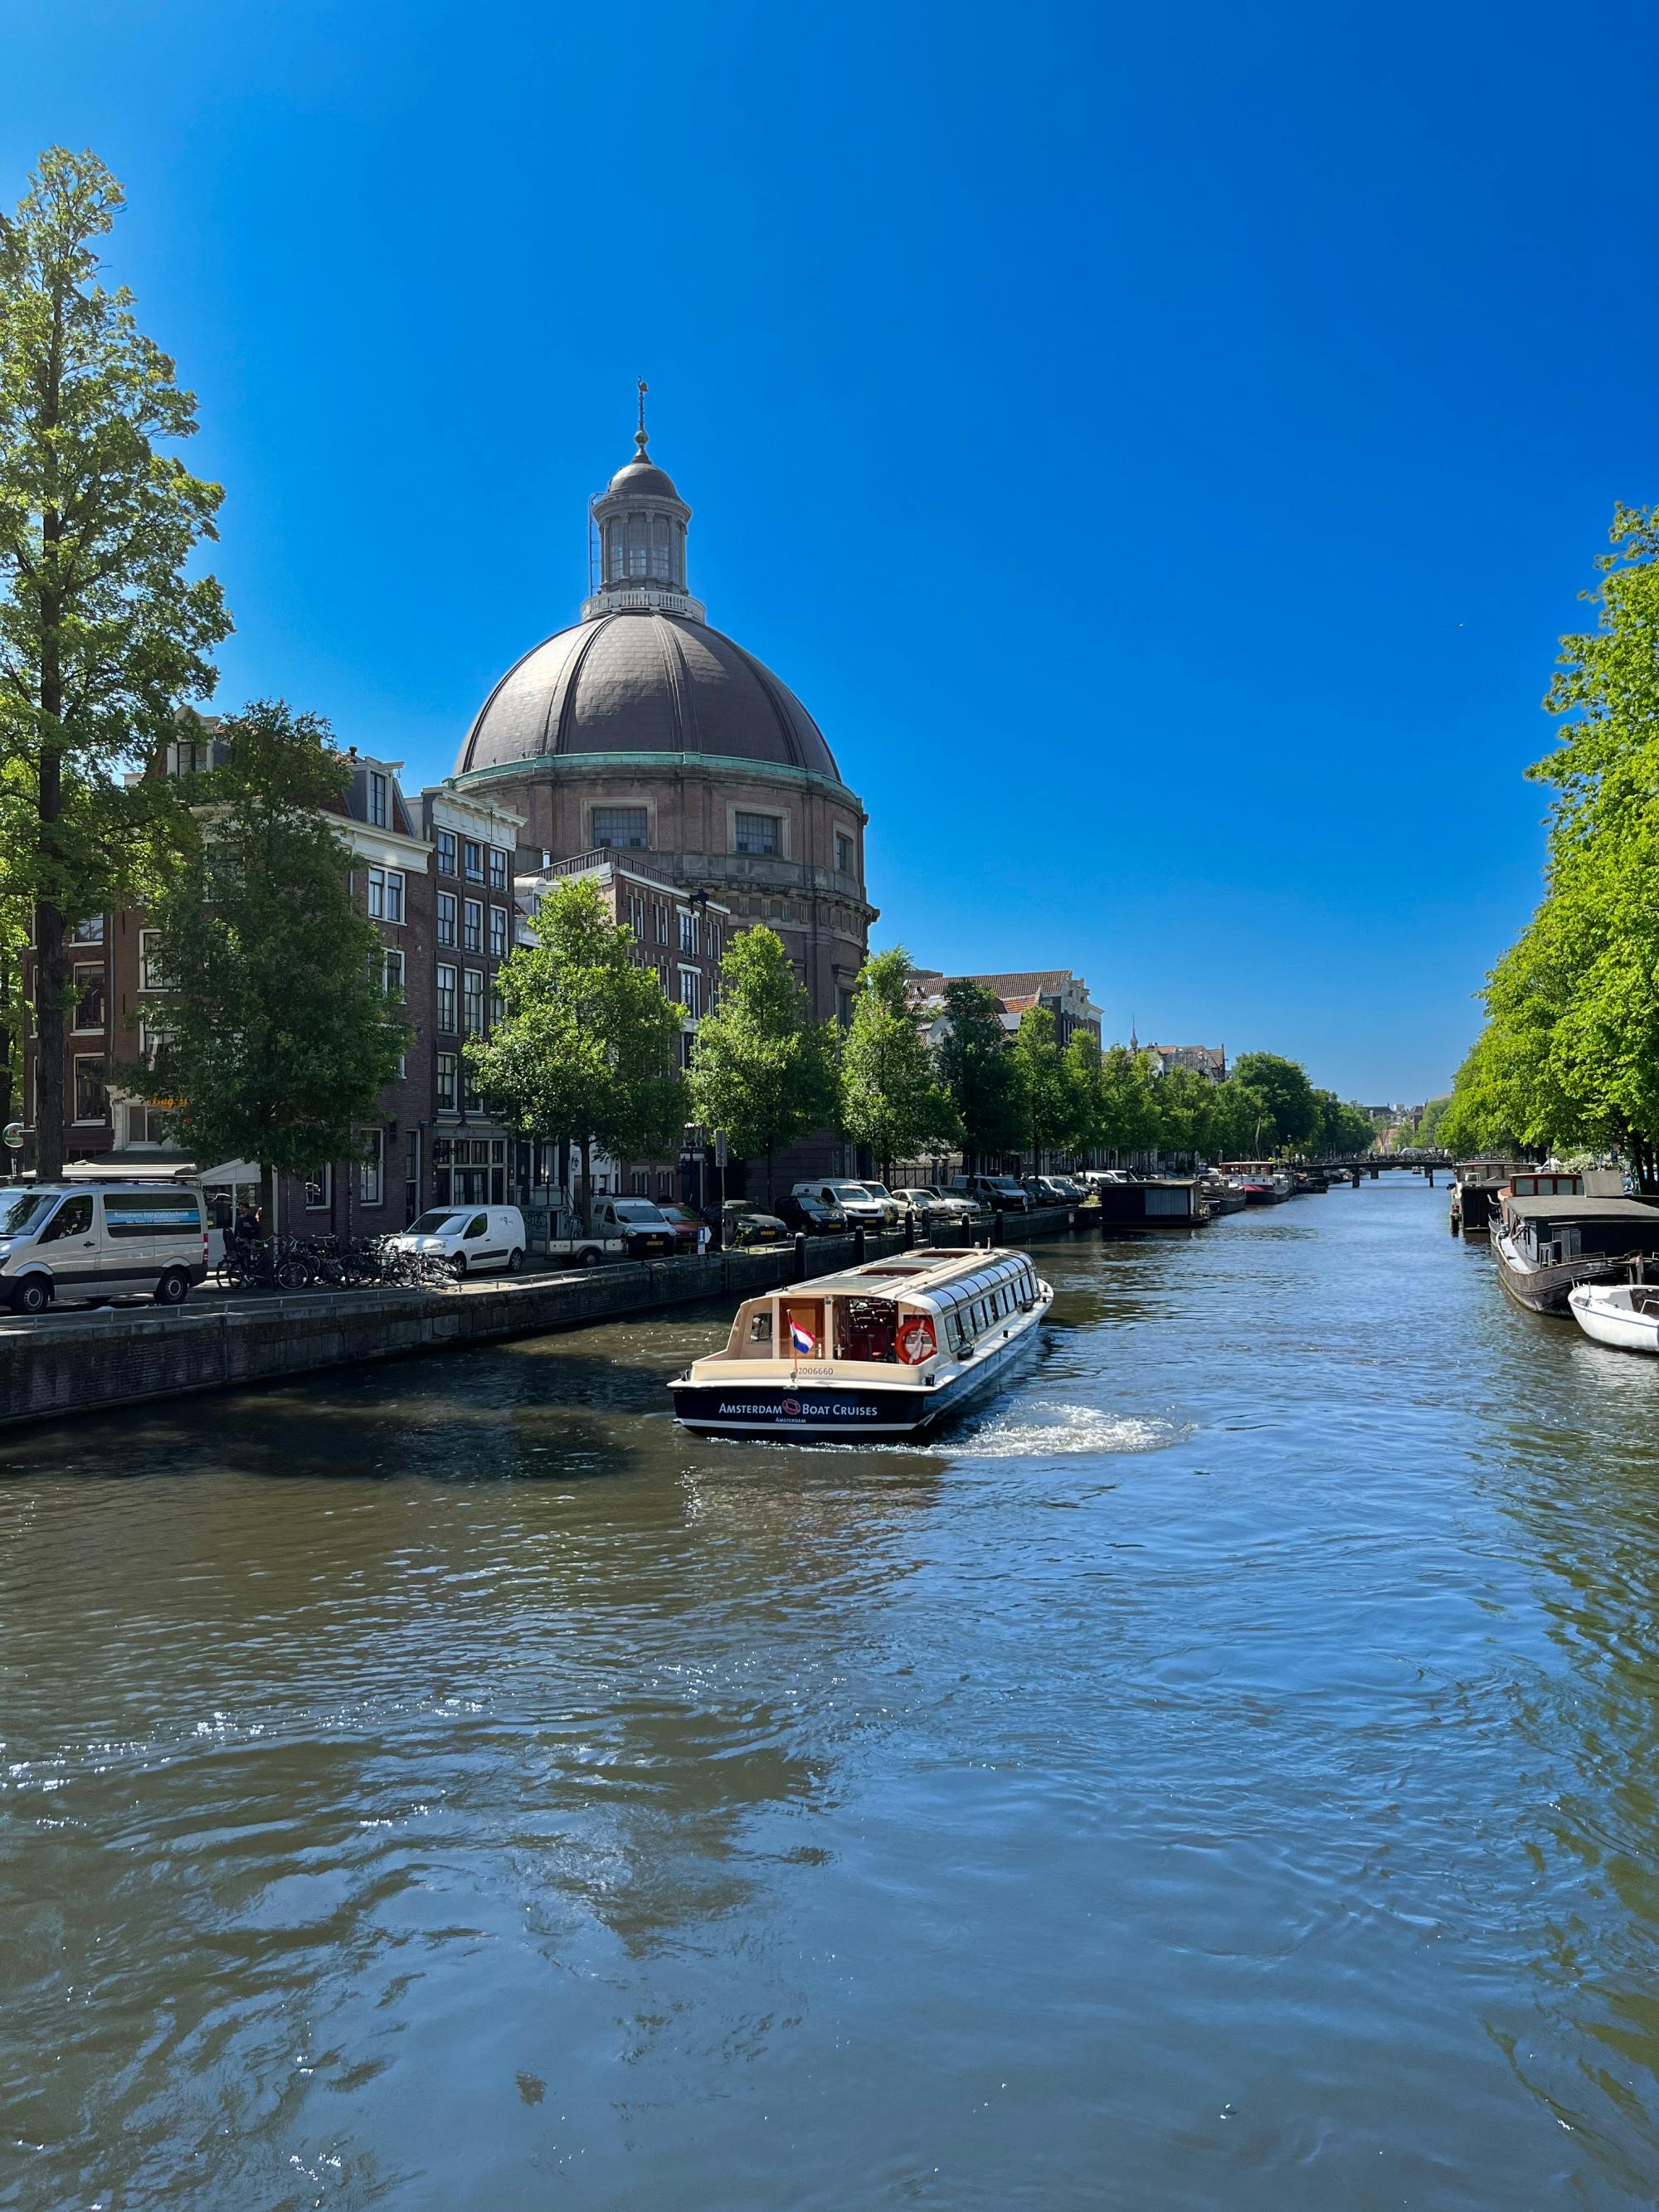 Crucero por los canales de 75 minutos: lo más destacado de Ámsterdam